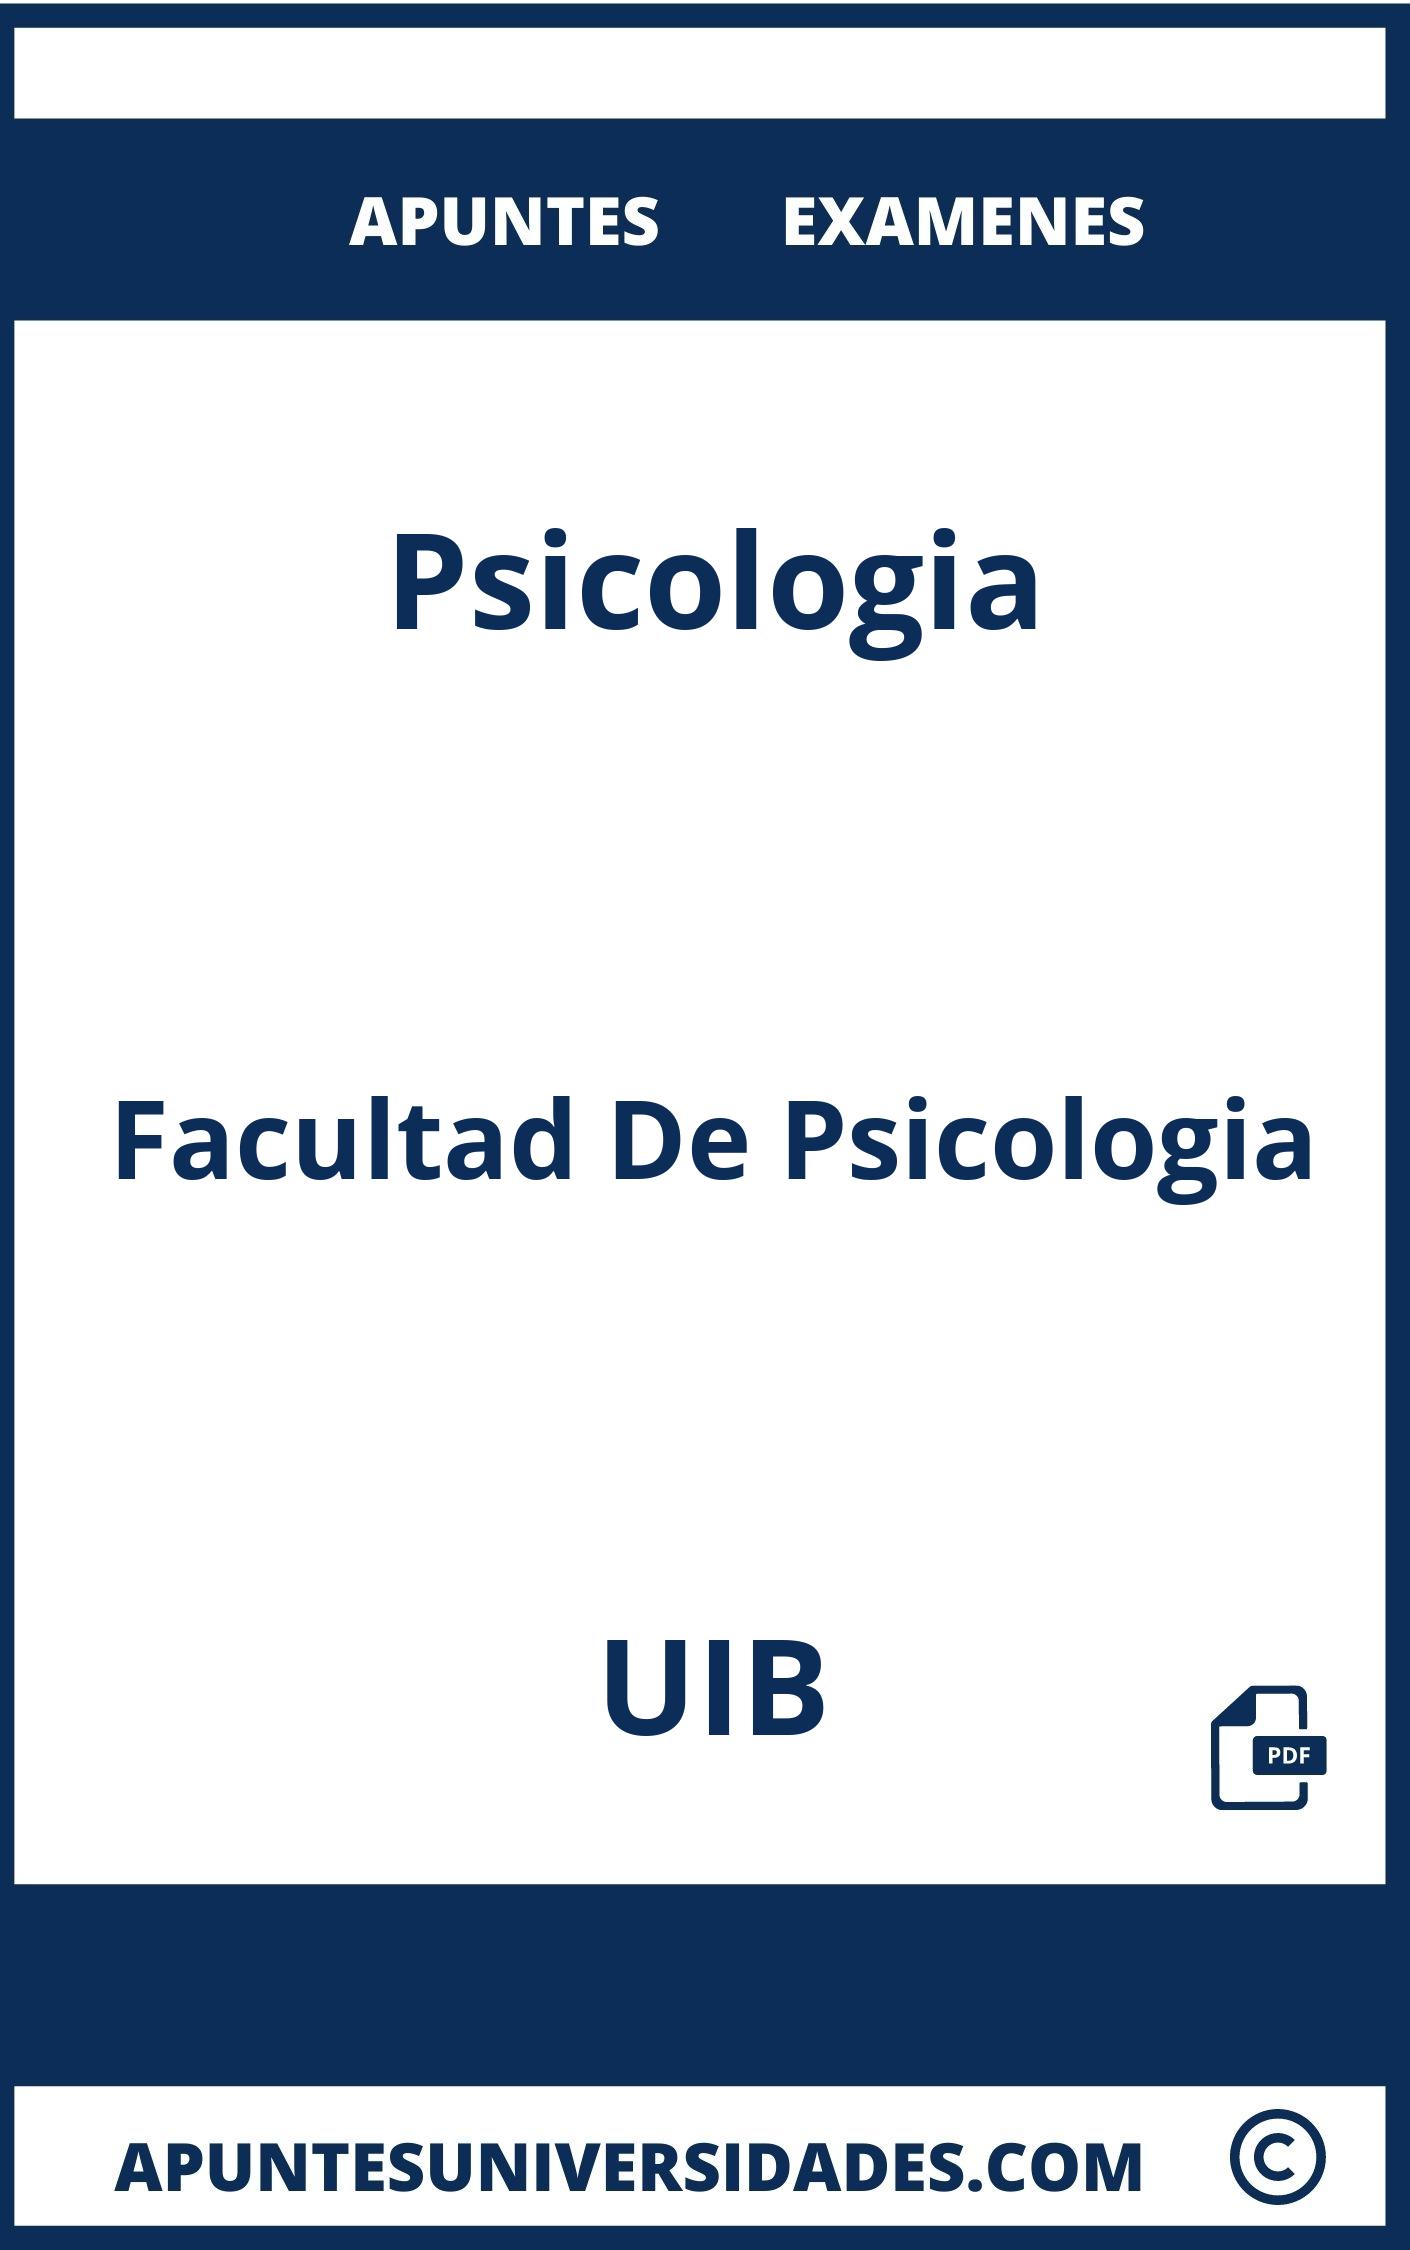 Apuntes Examenes Psicologia UIB